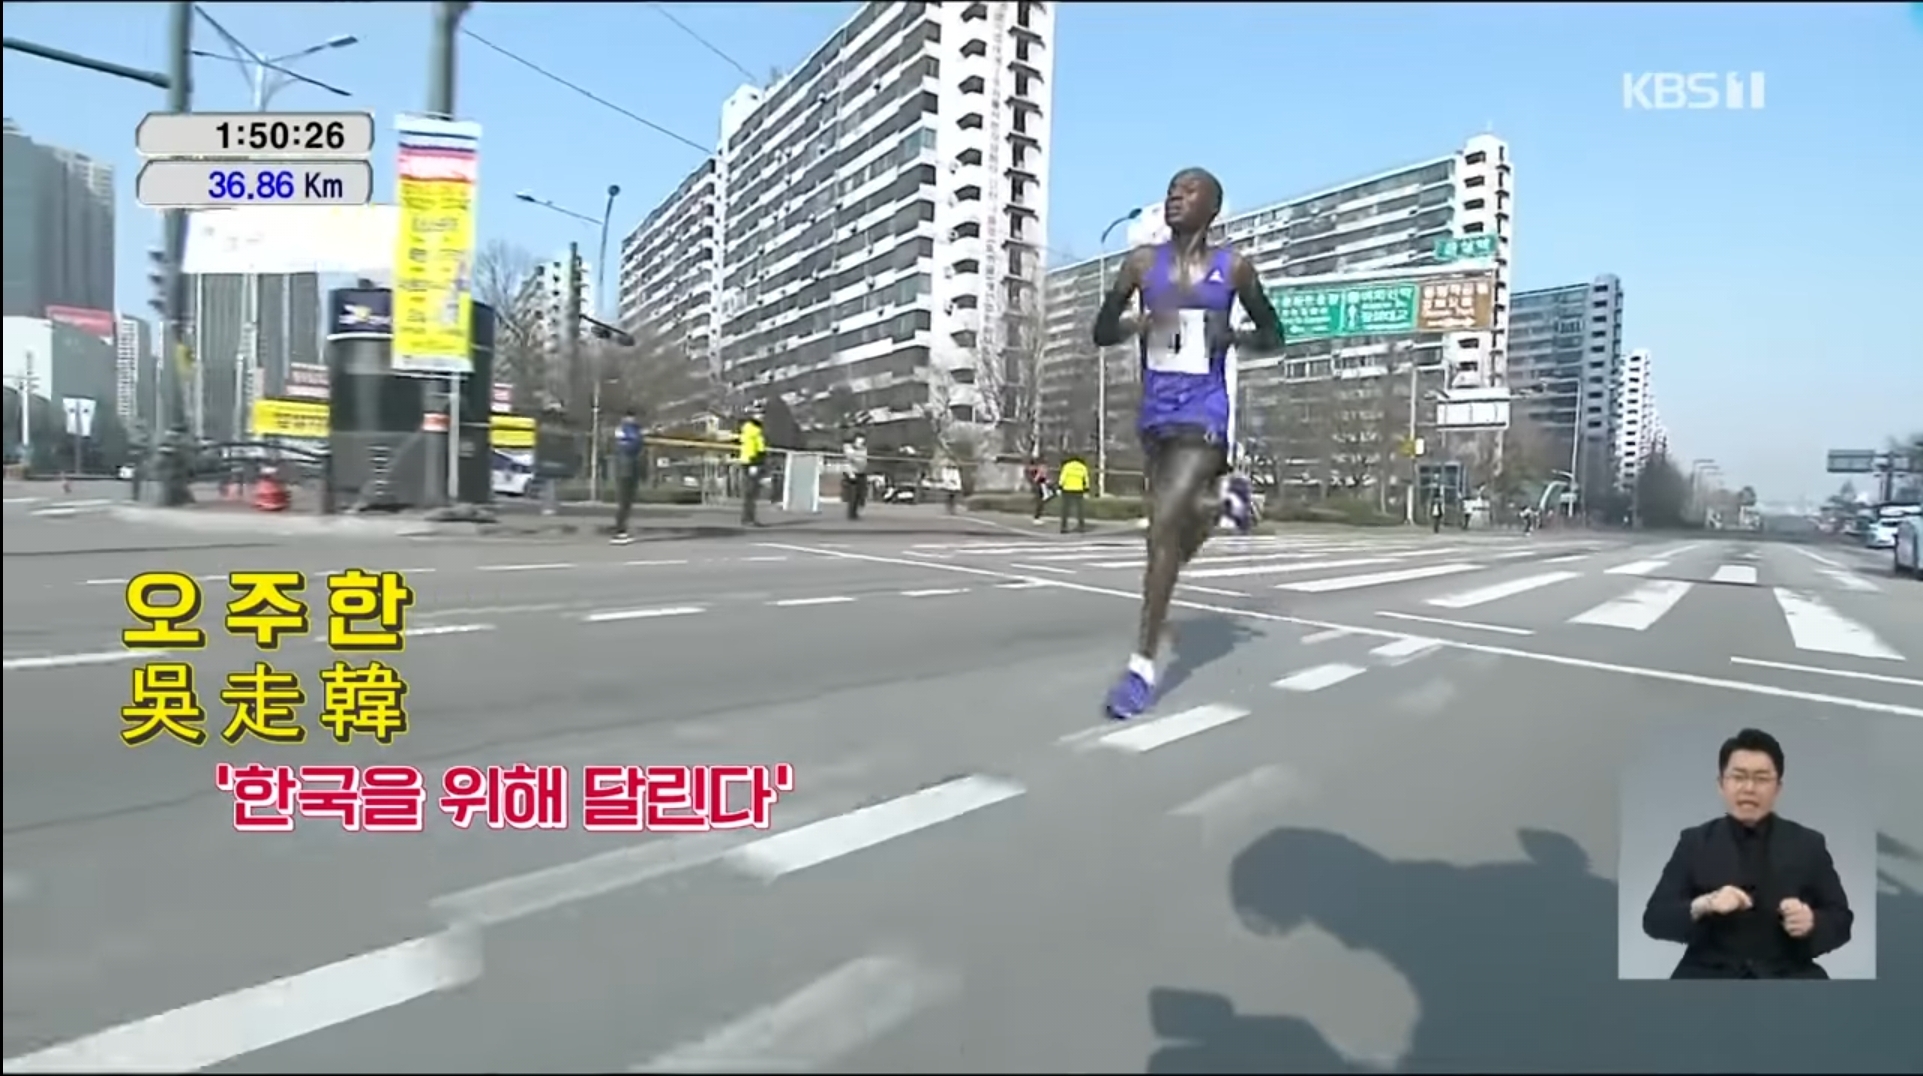 2018년 서울국제마라톤대회에서 우승한 오주한이 코스 막바지에서 역주하는 모습